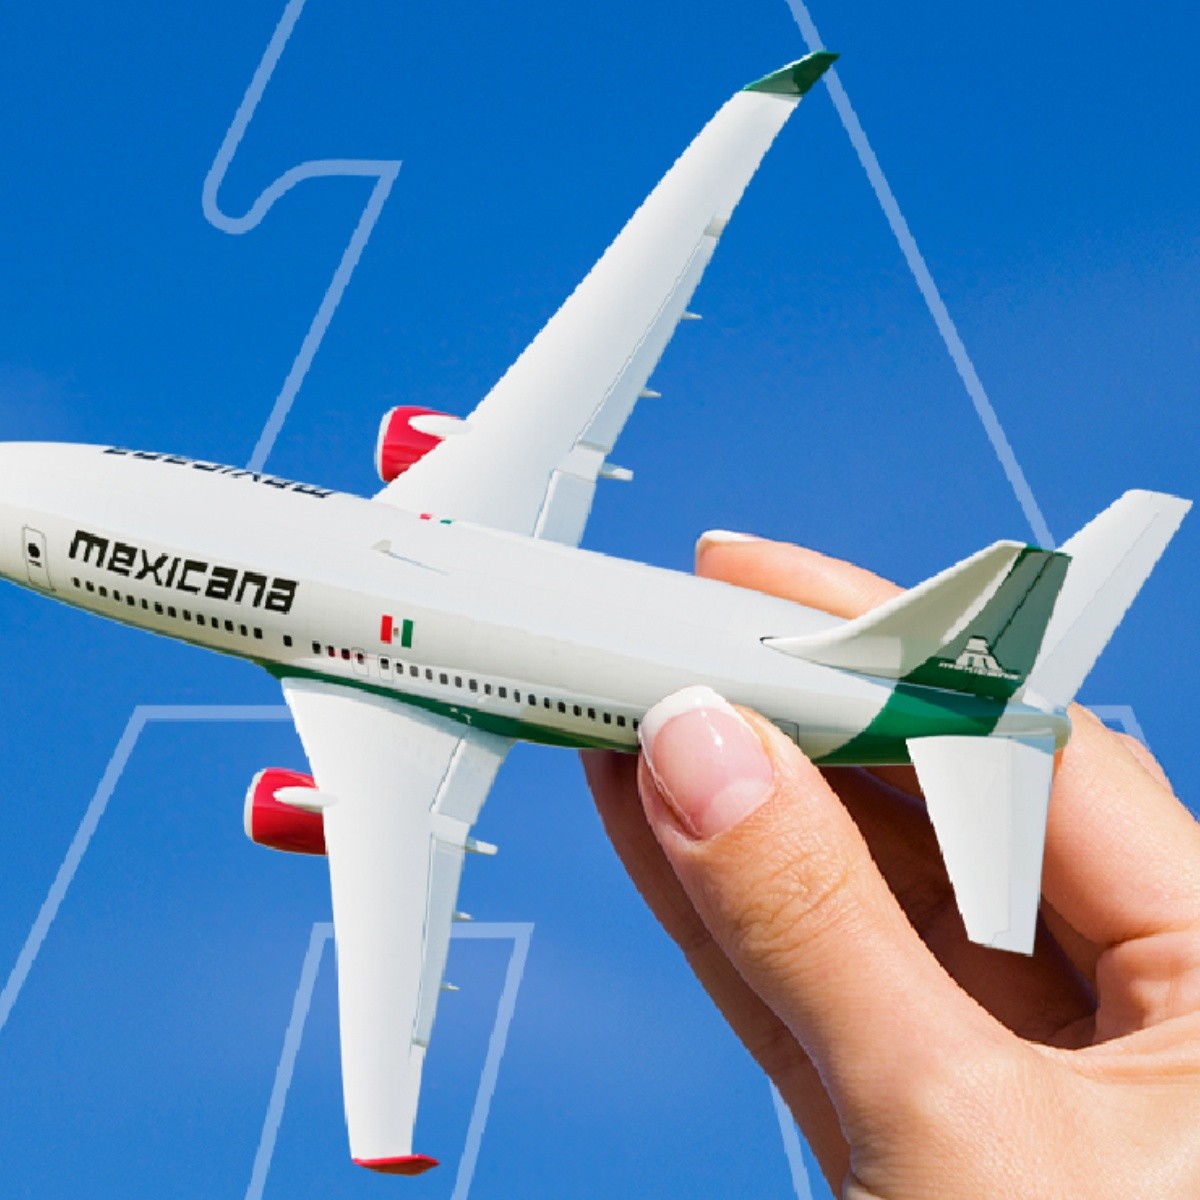 mexicana de aviación comienza la venta de vuelos a nuevos destinos: se agotan los boletos